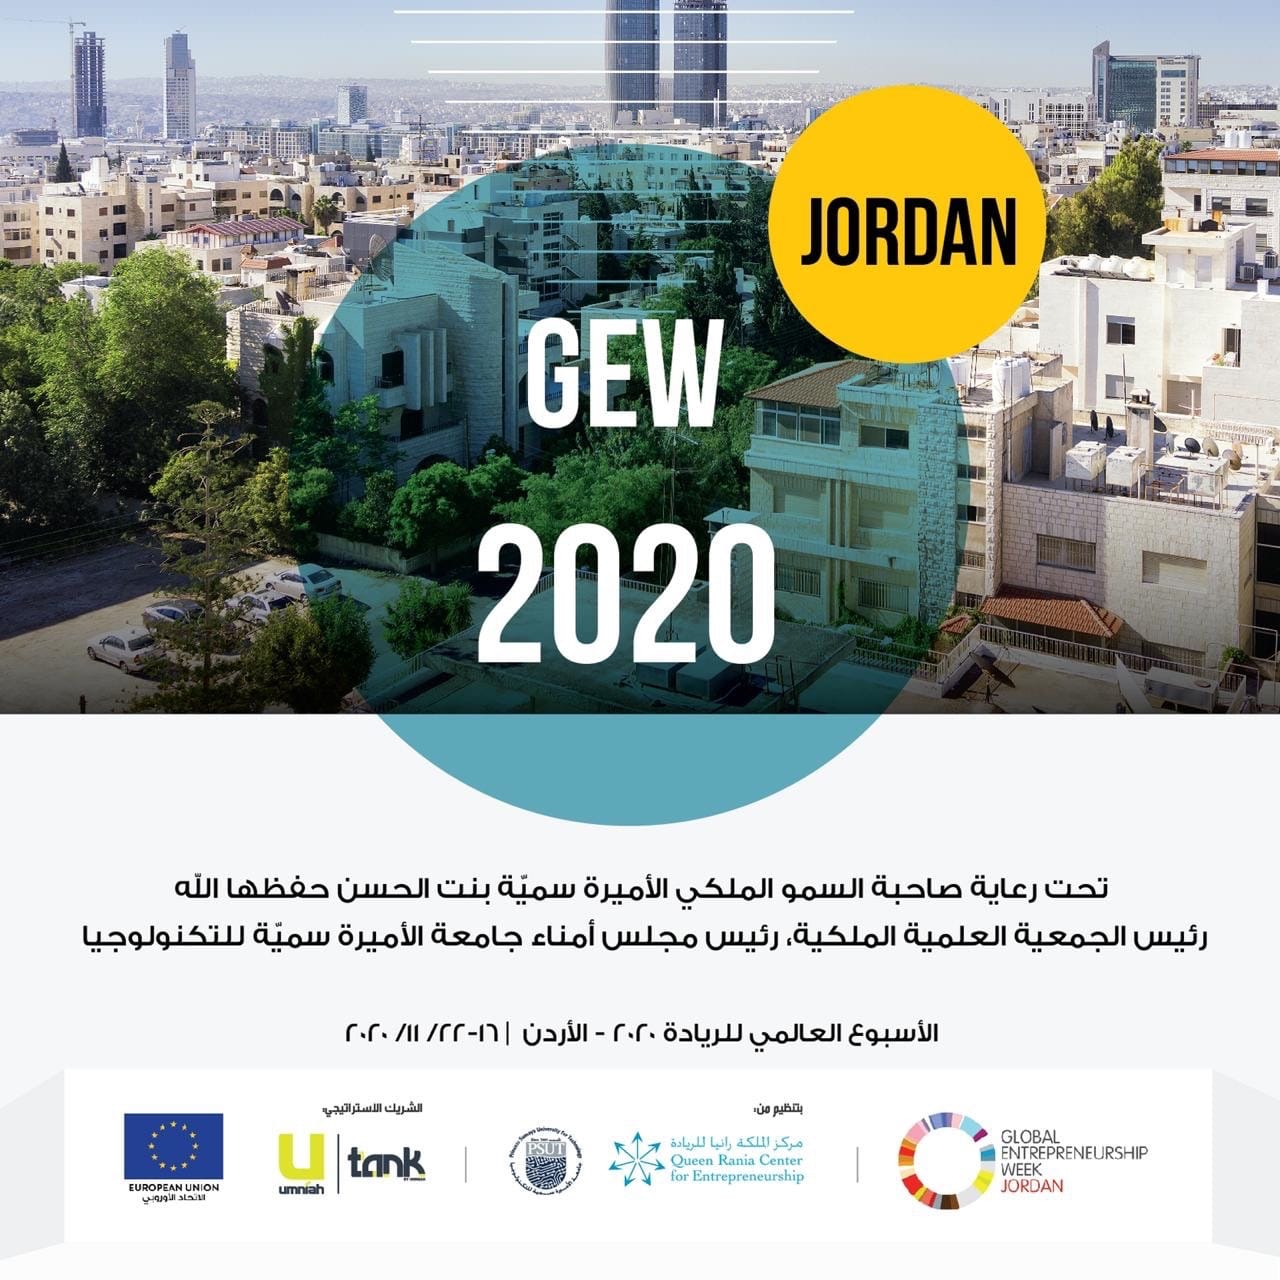 برعاية صاحبة السمو الملكي الأميرة سمية بنت الحسن المعظمة   انطلاق أعمال أسبوع الريادة العالمي 2020  بنسخته 12 في الأردن